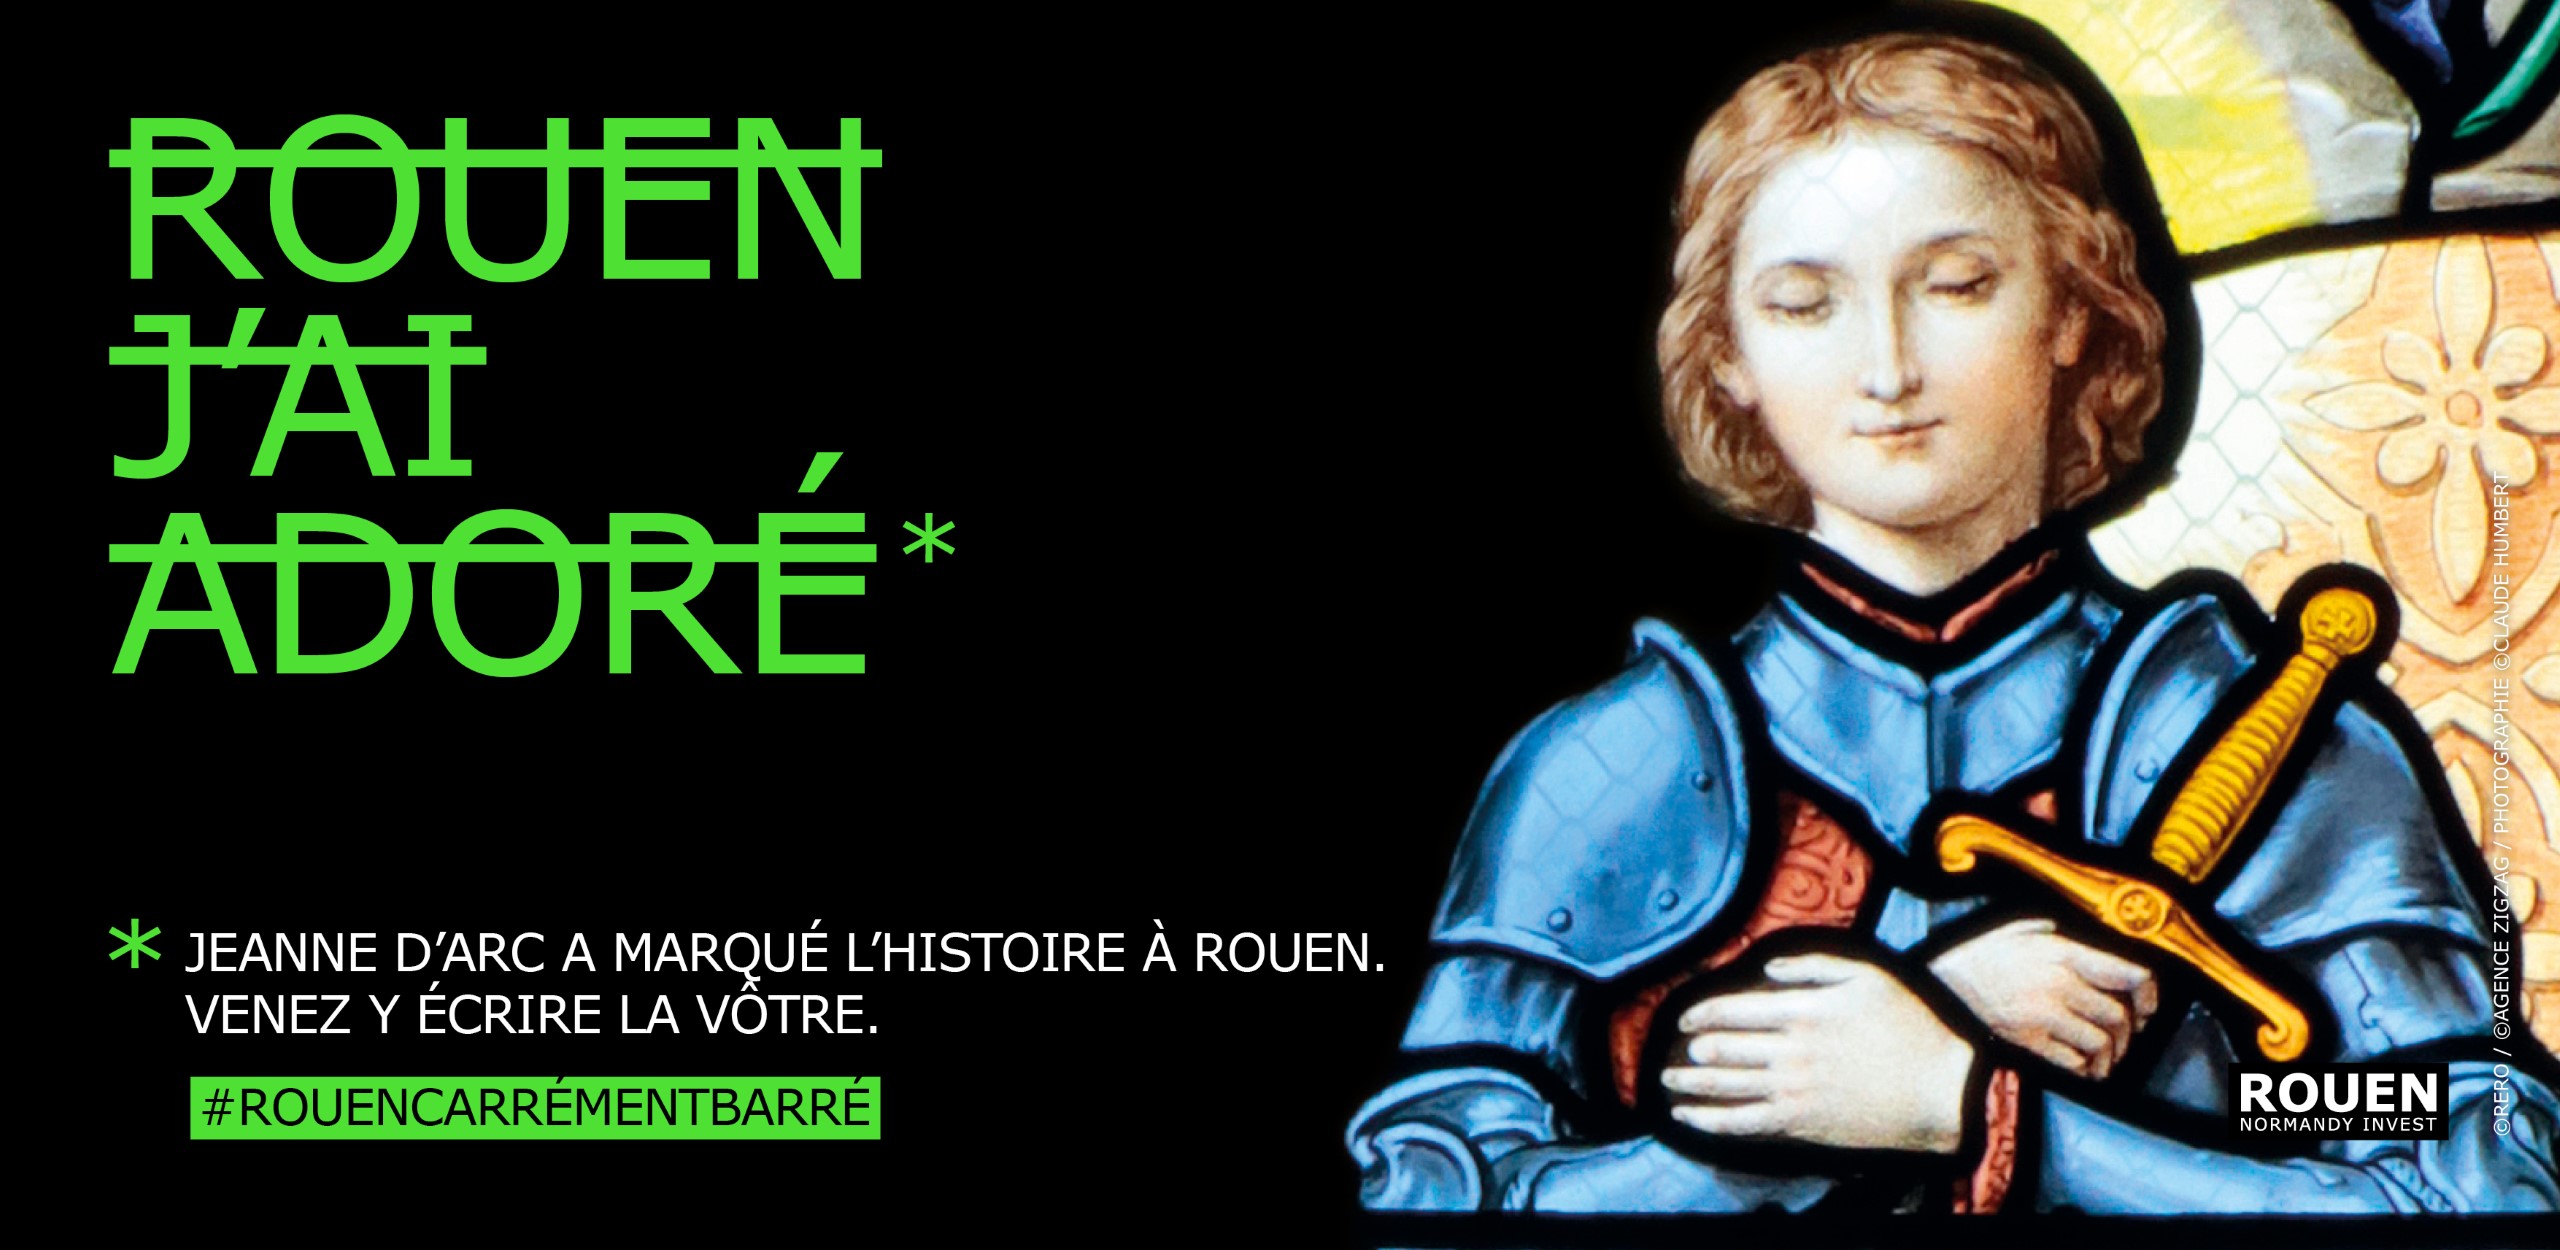 Campagne de communication Rouen Normandy Invest RERO - Rouen J'ai adoré - Jeanne d'Arc